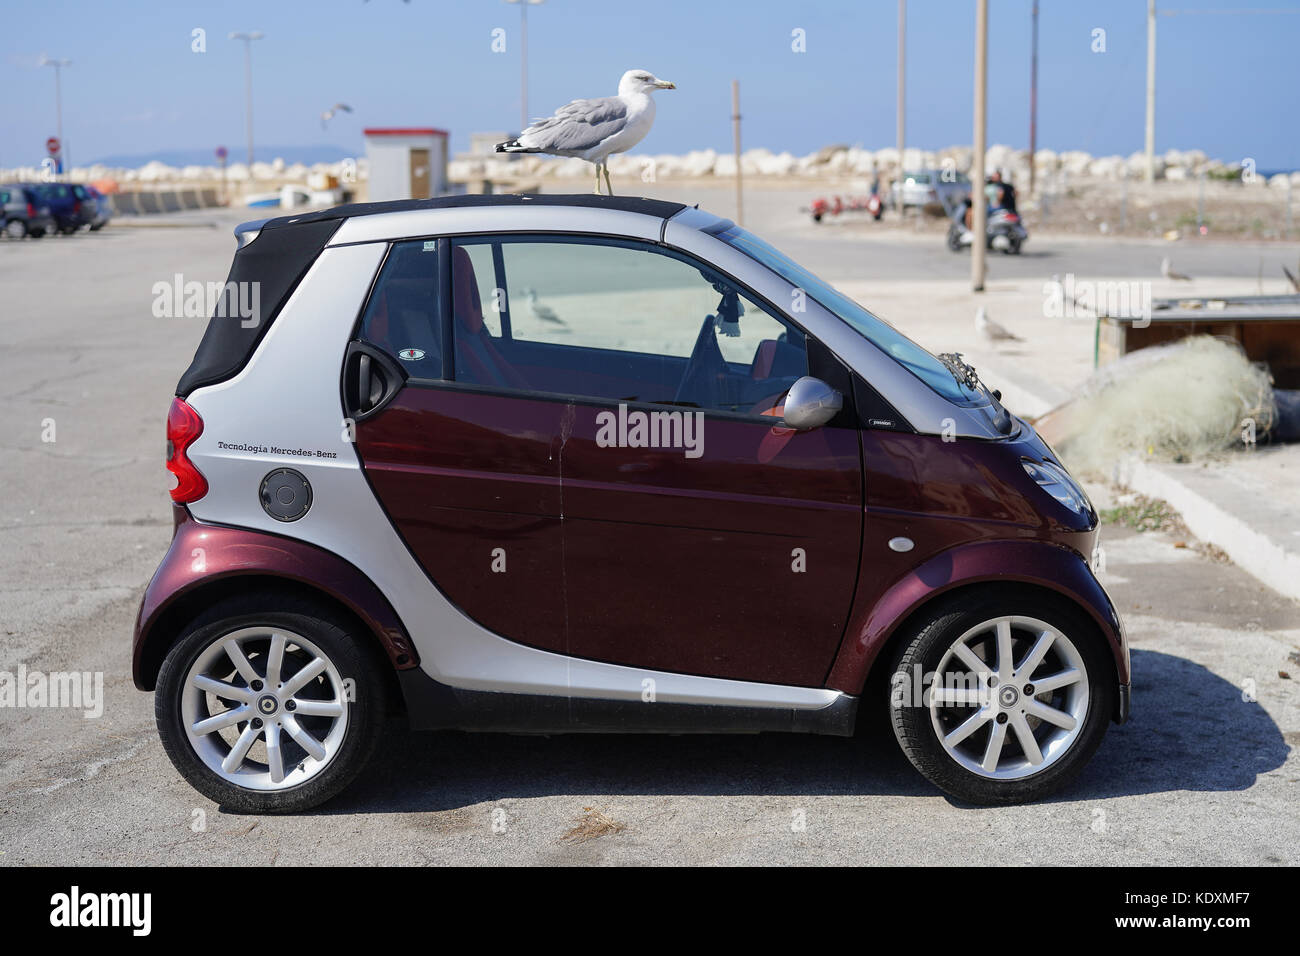 Mercedes smart car immagini e fotografie stock ad alta risoluzione - Alamy